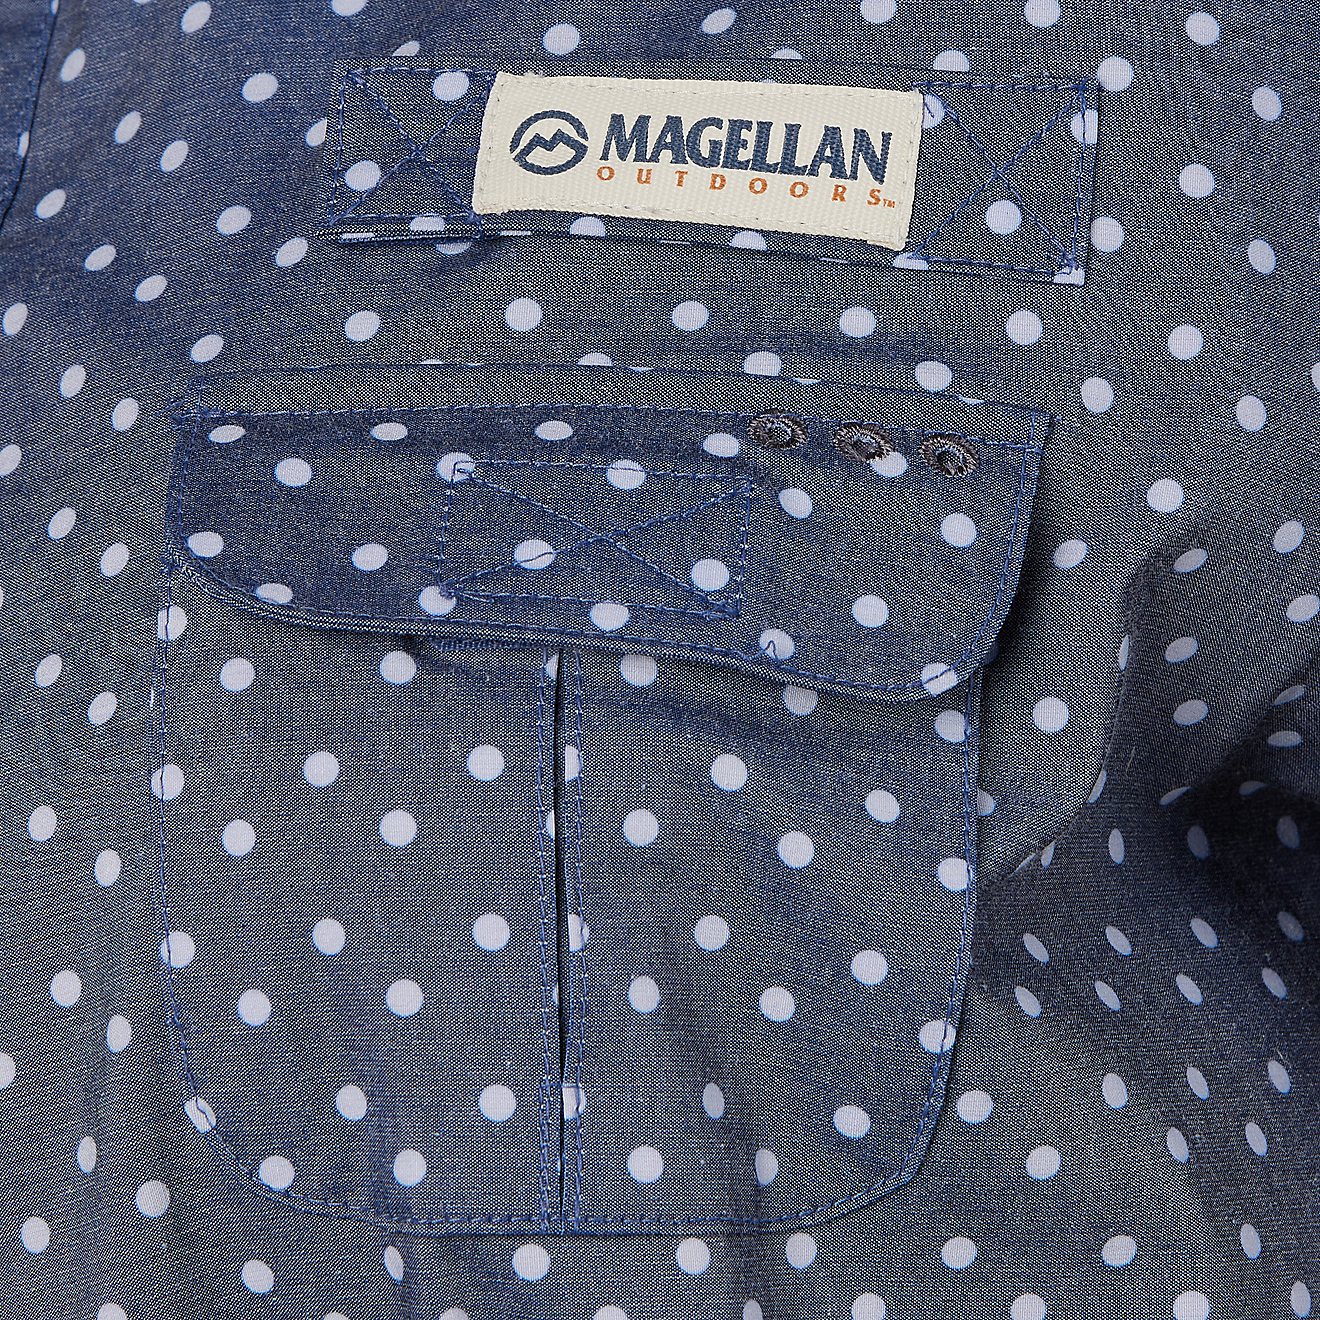 Magellan Outdoors Women's Southern Summer Print Long Sleeve Shirt Dress                                                          - view number 6